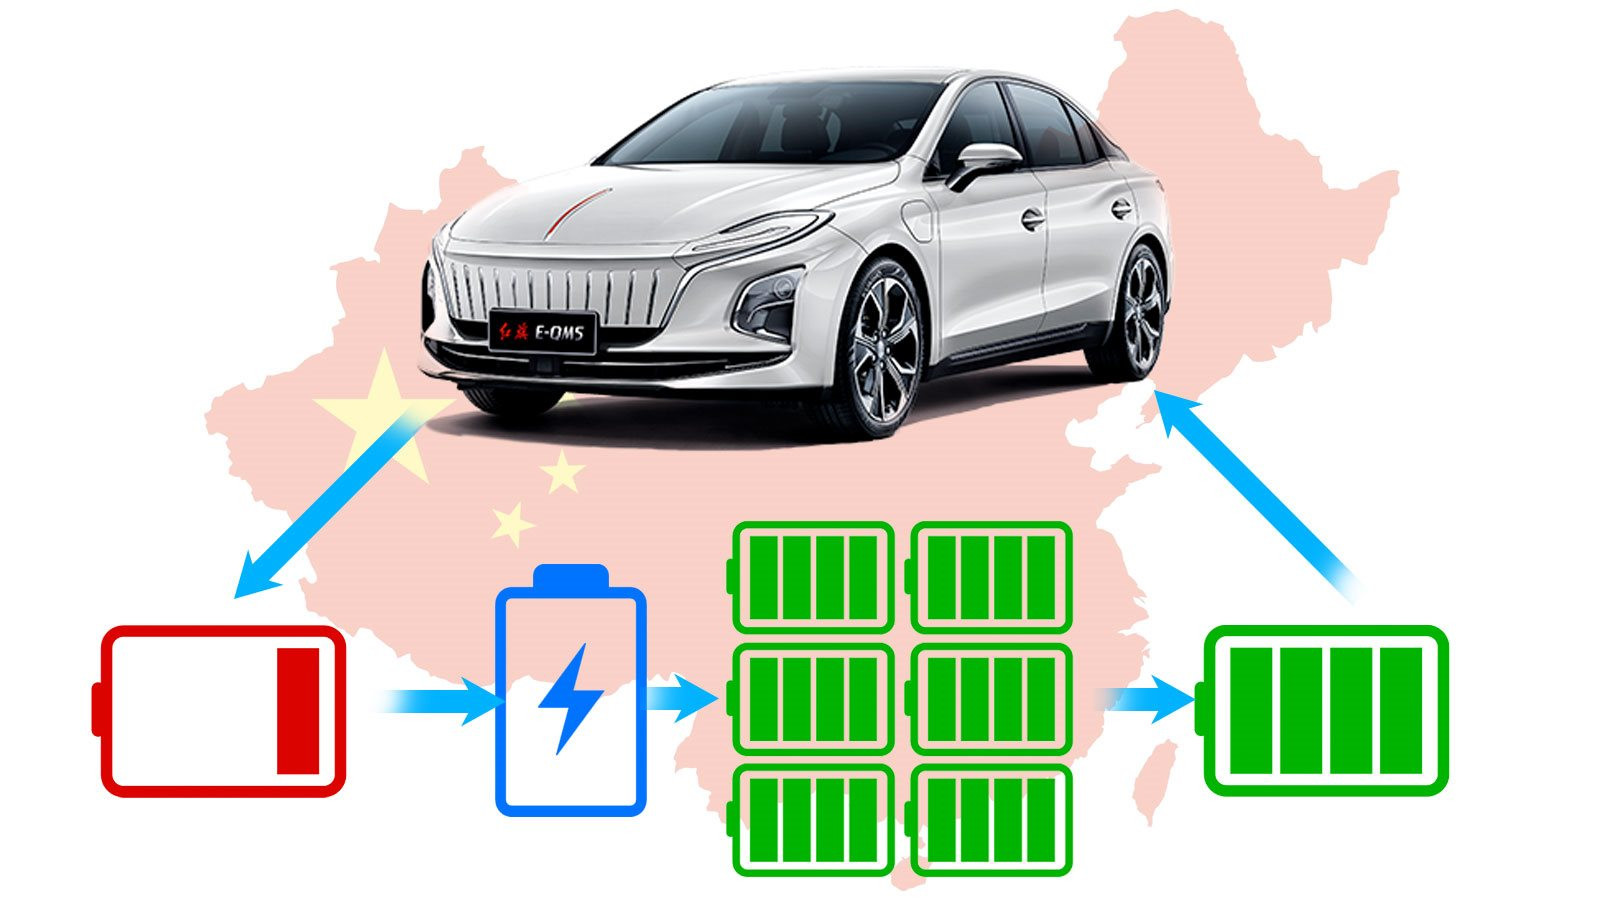 Bí mật sau những chiếc xe điện siêu rẻ của Trung Quốc: Sản xuất 66% ắc quy, kiểm soát 67% lithium tinh chế, các hãng xe nước ngoài không có cửa cạnh tranh - Ảnh 5.